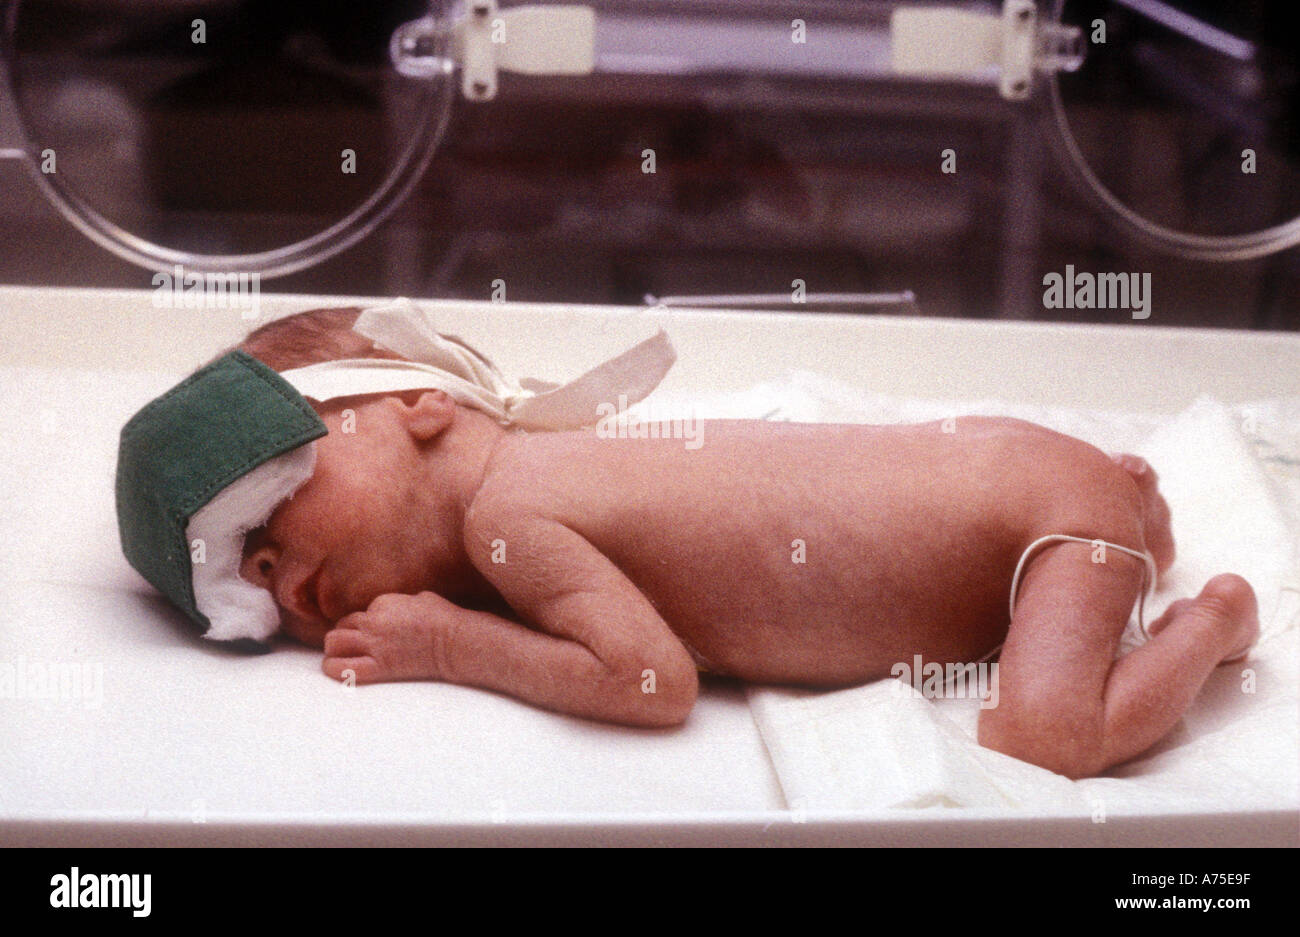 Naissance bébé fille à l'intérieur de l'incubateur à l'hôpital après la  salle d'accouchement 11673706 Photo de stock chez Vecteezy